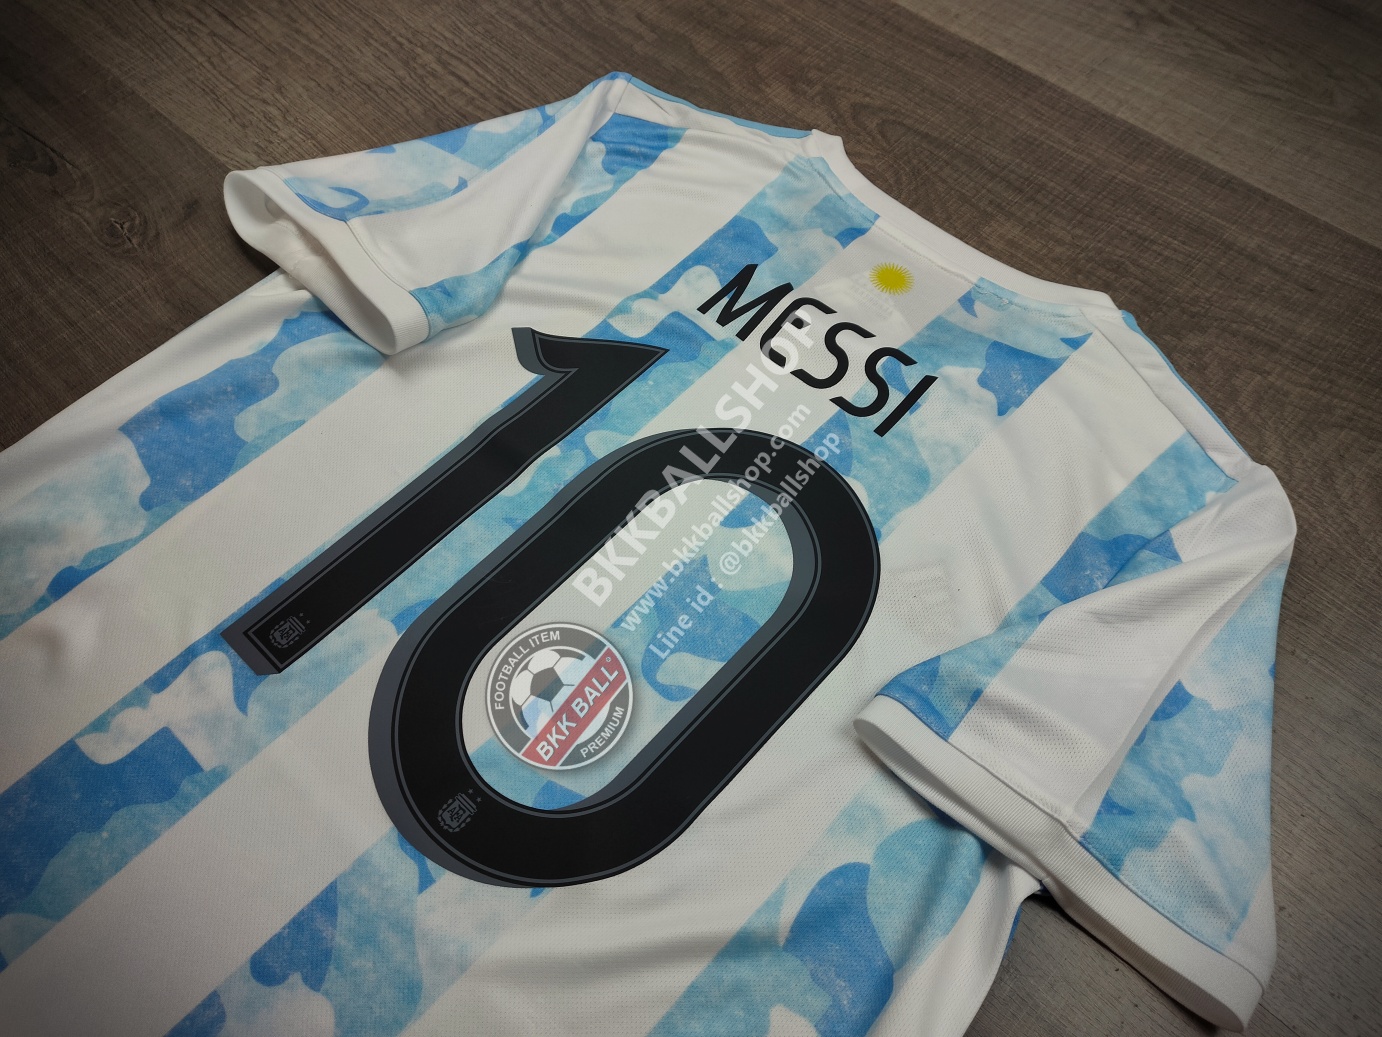 เสื้อฟุตบอล ทีมชาติ Argentina Home อาร์เจนติน่า เหย้า 2021/22 โคป้า อเมริกา พร้อมเบอร์ชื่อ 10 MESSI